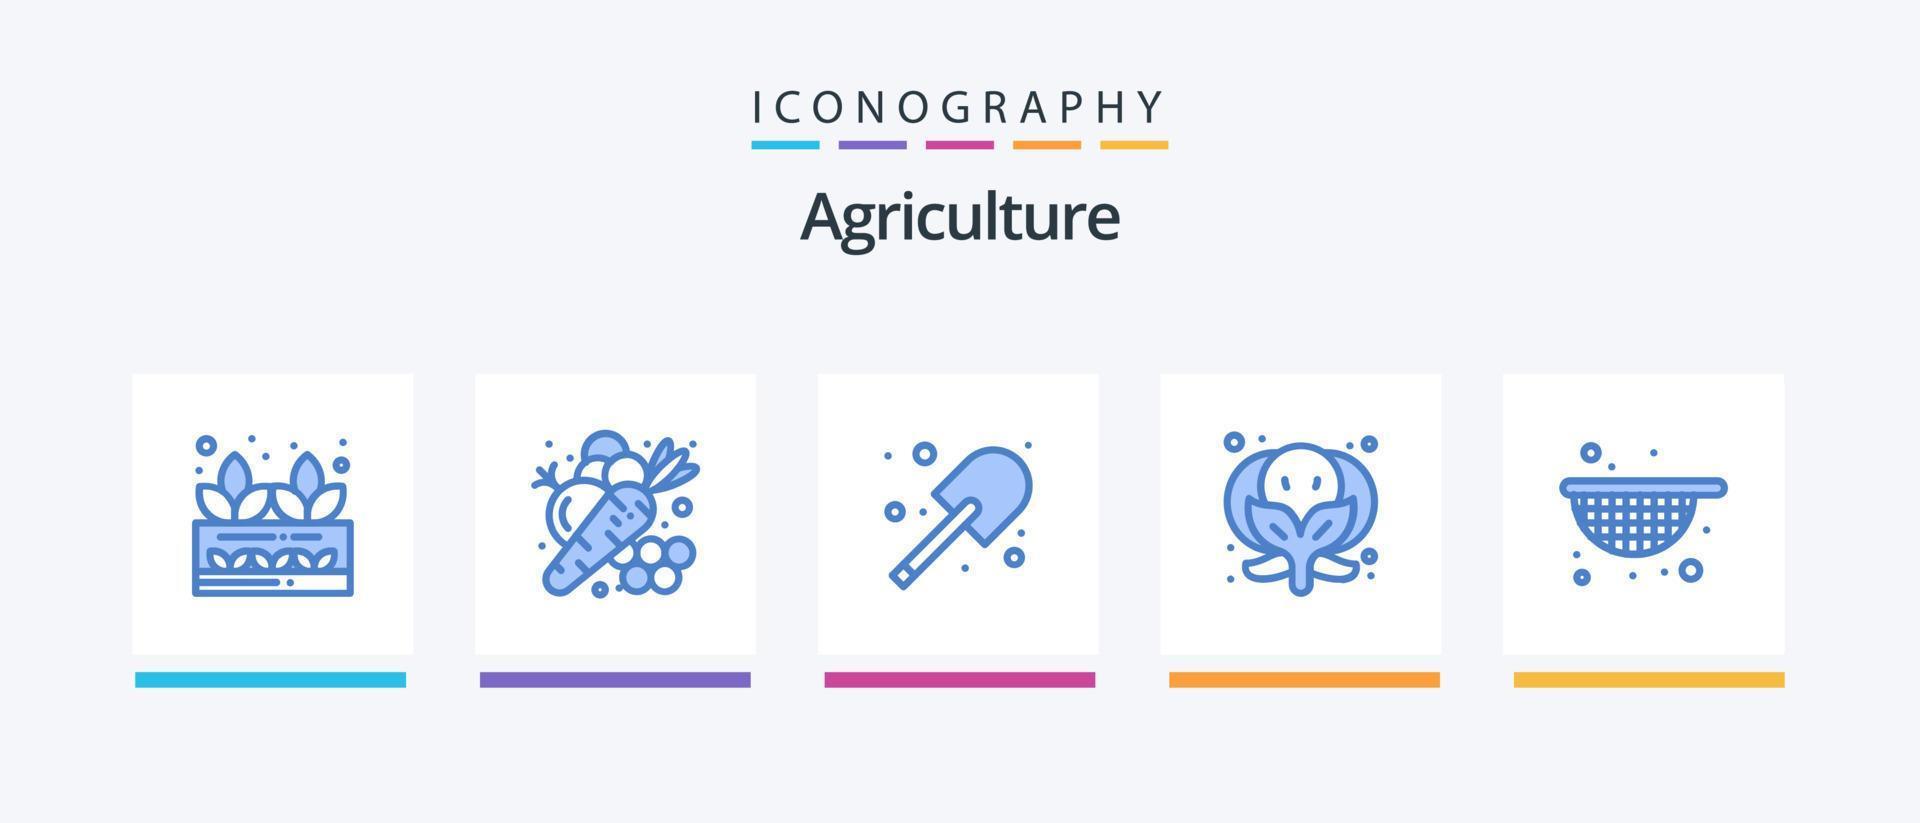 landbouw blauw 5 icoon pak inclusief landbouw. groente. groente. voedsel. spade. creatief pictogrammen ontwerp vector